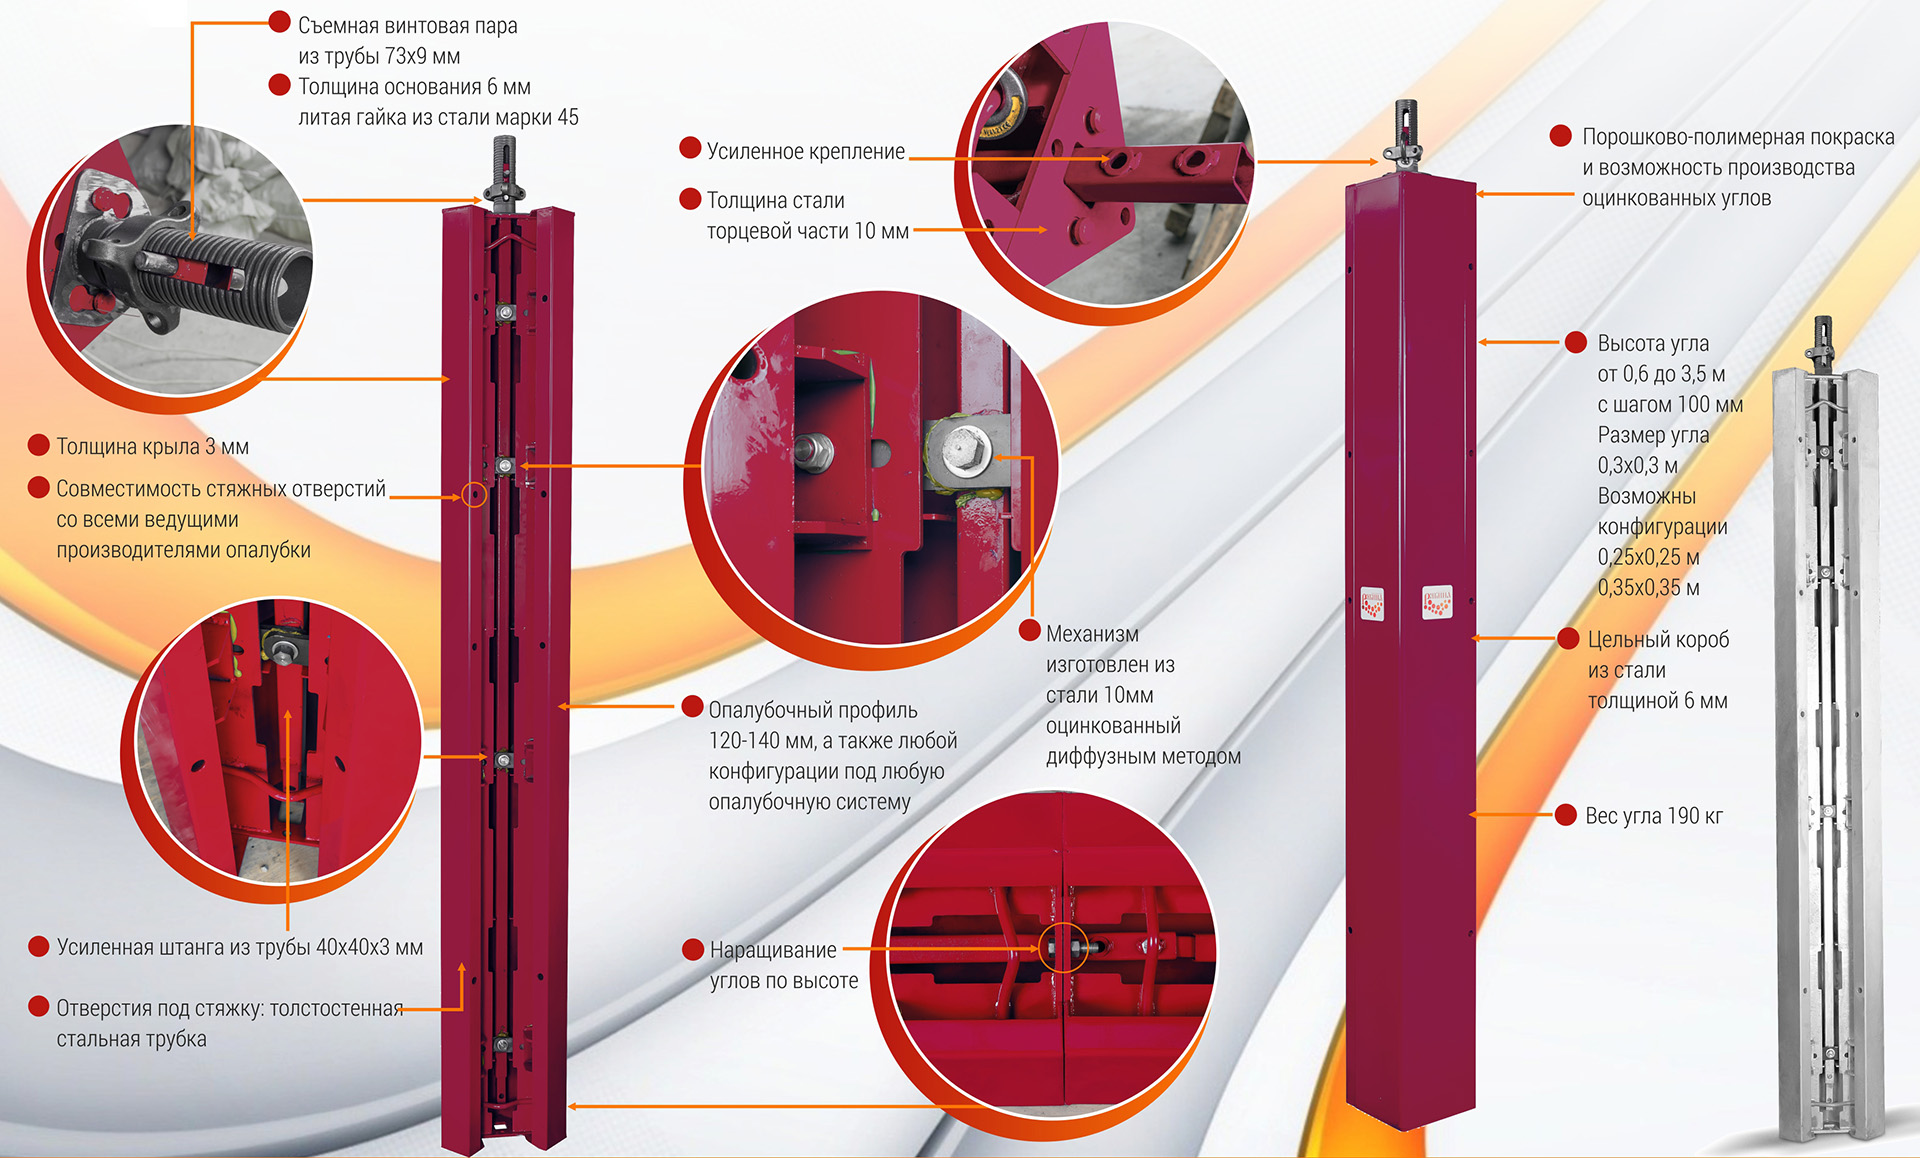 Схема сборки распалубочных углов для опалубки лифтовых шахт